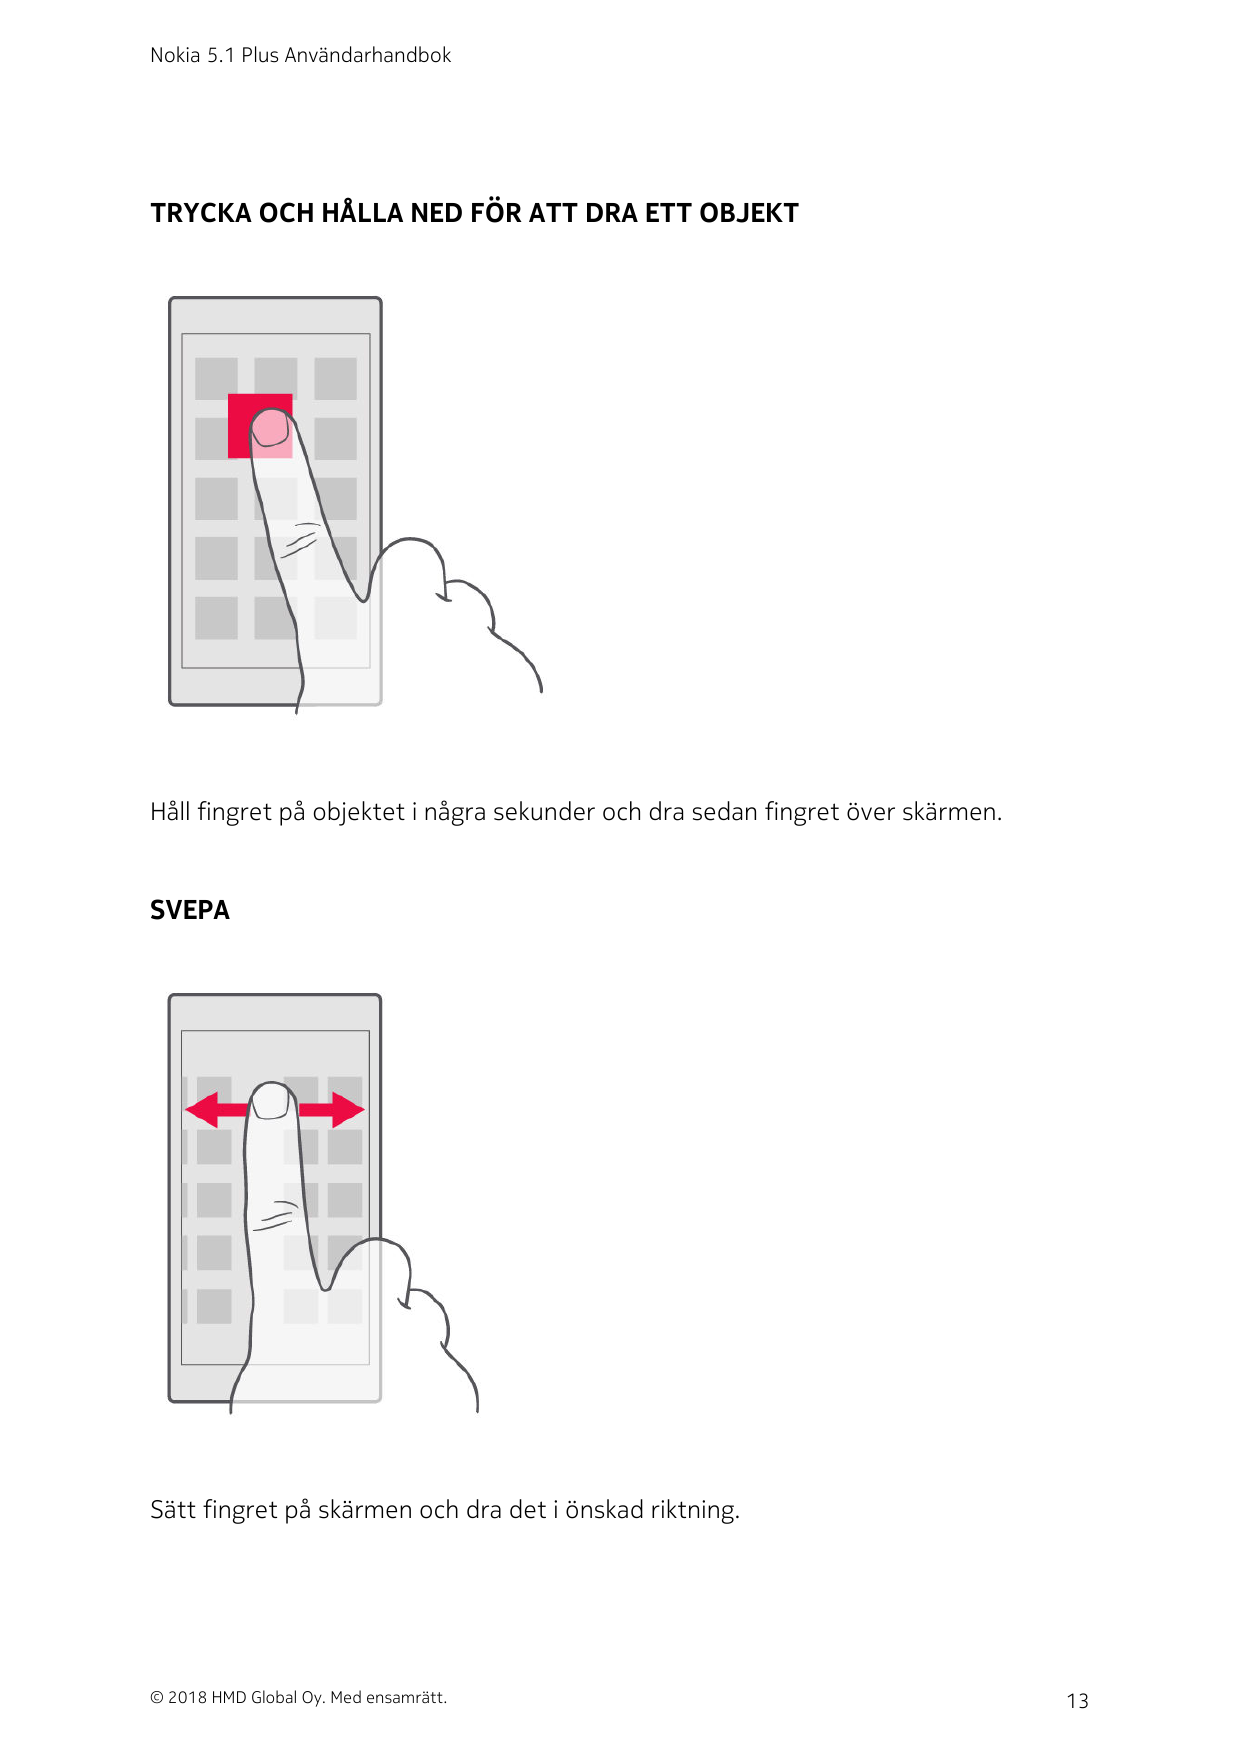 Nokia 5.1 Plus AnvändarhandbokTRYCKA OCH HÅLLA NED FÖR ATT DRA ETT OBJEKTHåll fingret på objektet i några sekunder och dra sedan